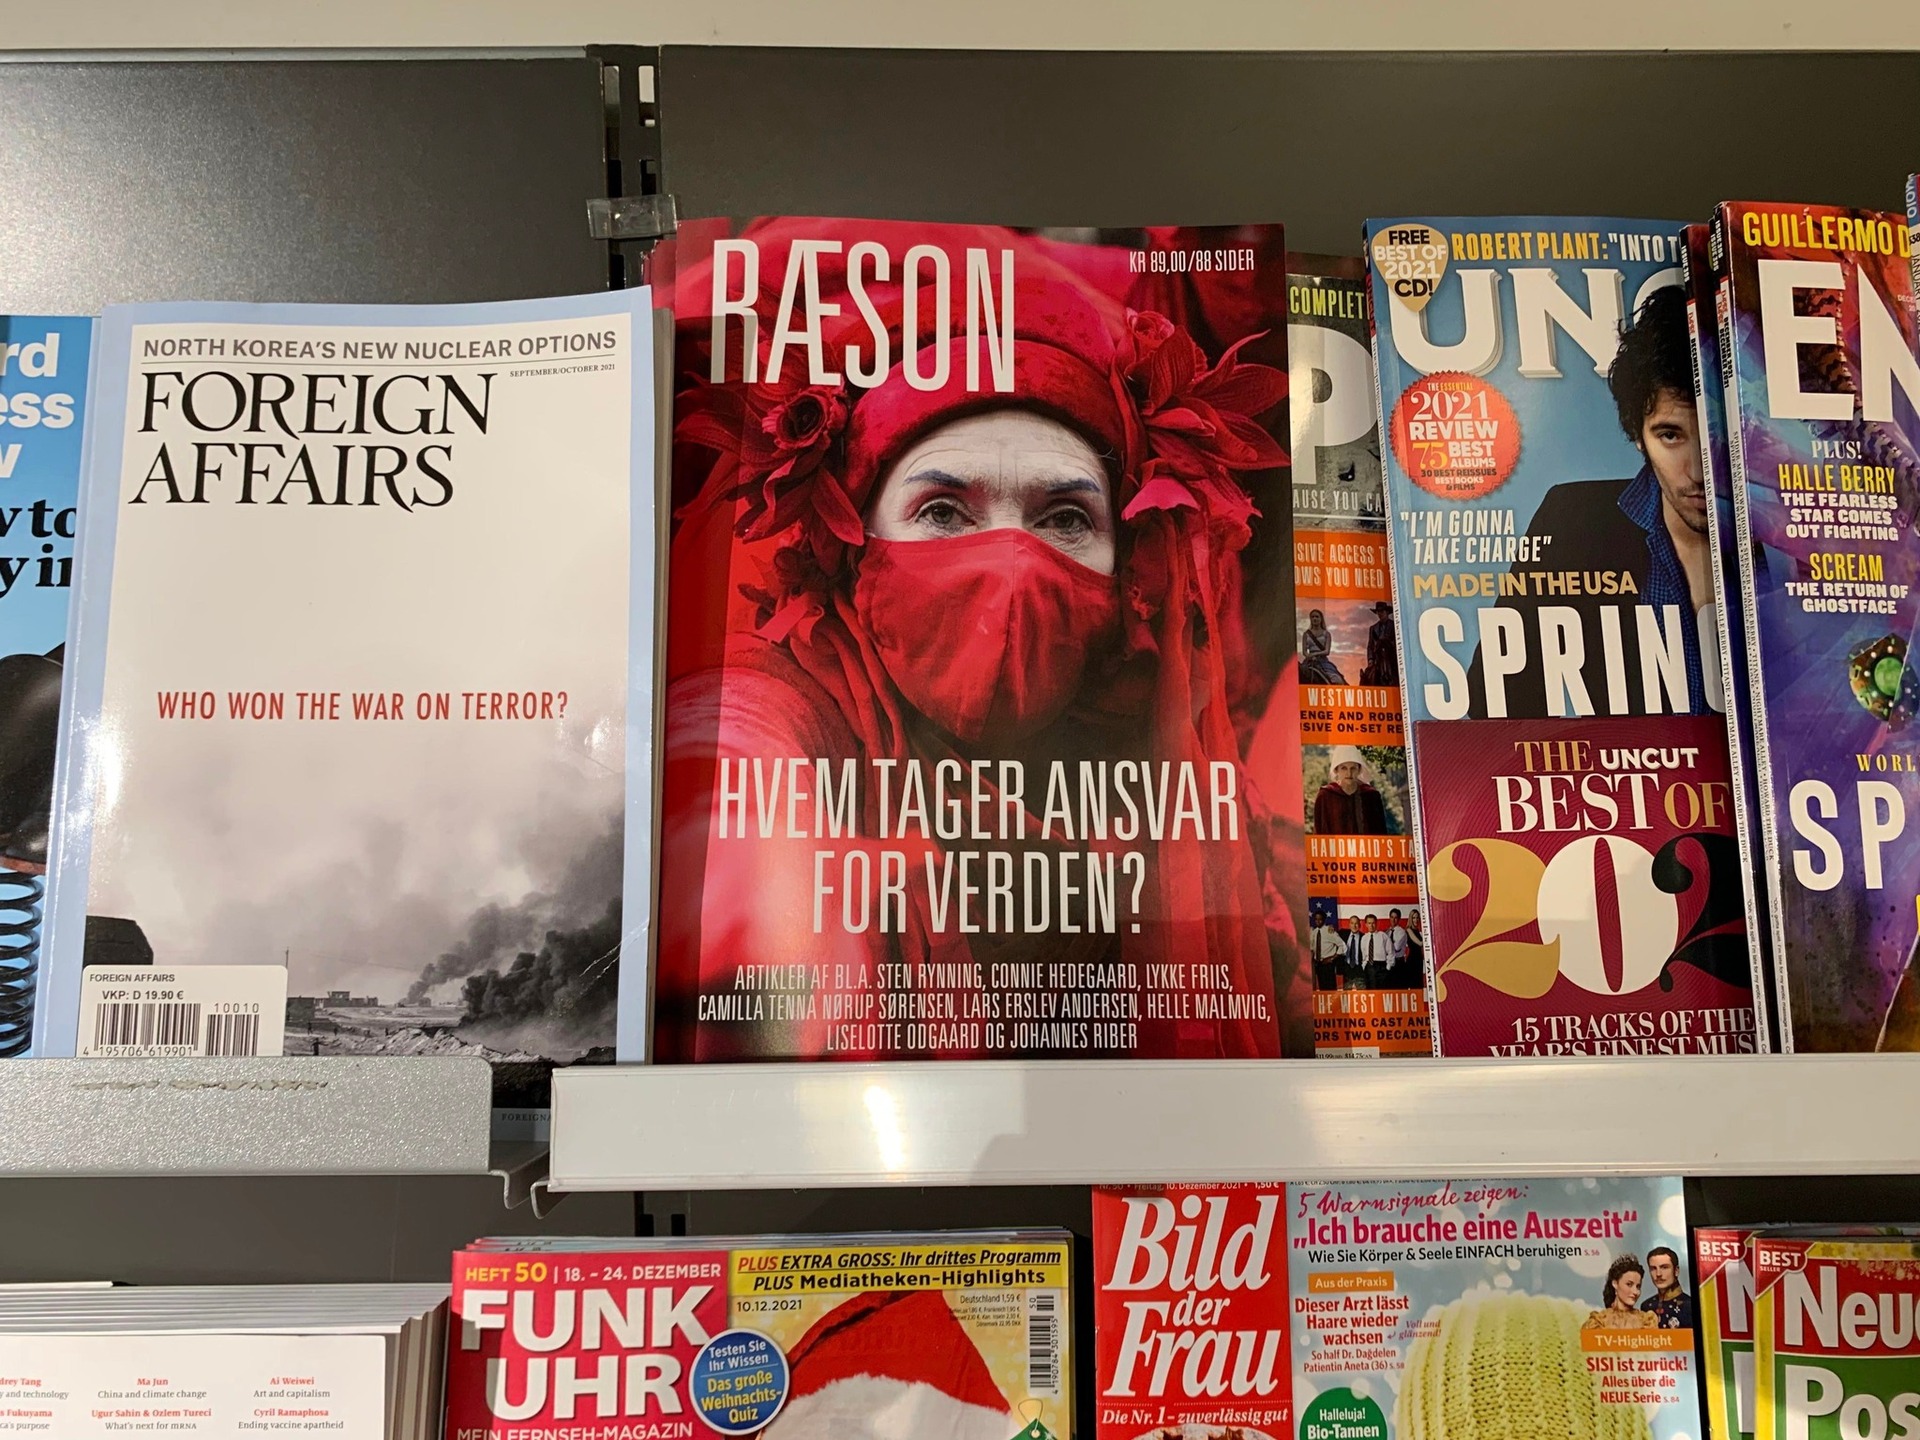 RÆSONs trykte nummer 50 er i kioskerne 30. juni – tegn abonnement nu og få bladet med posten inden udgivelsen